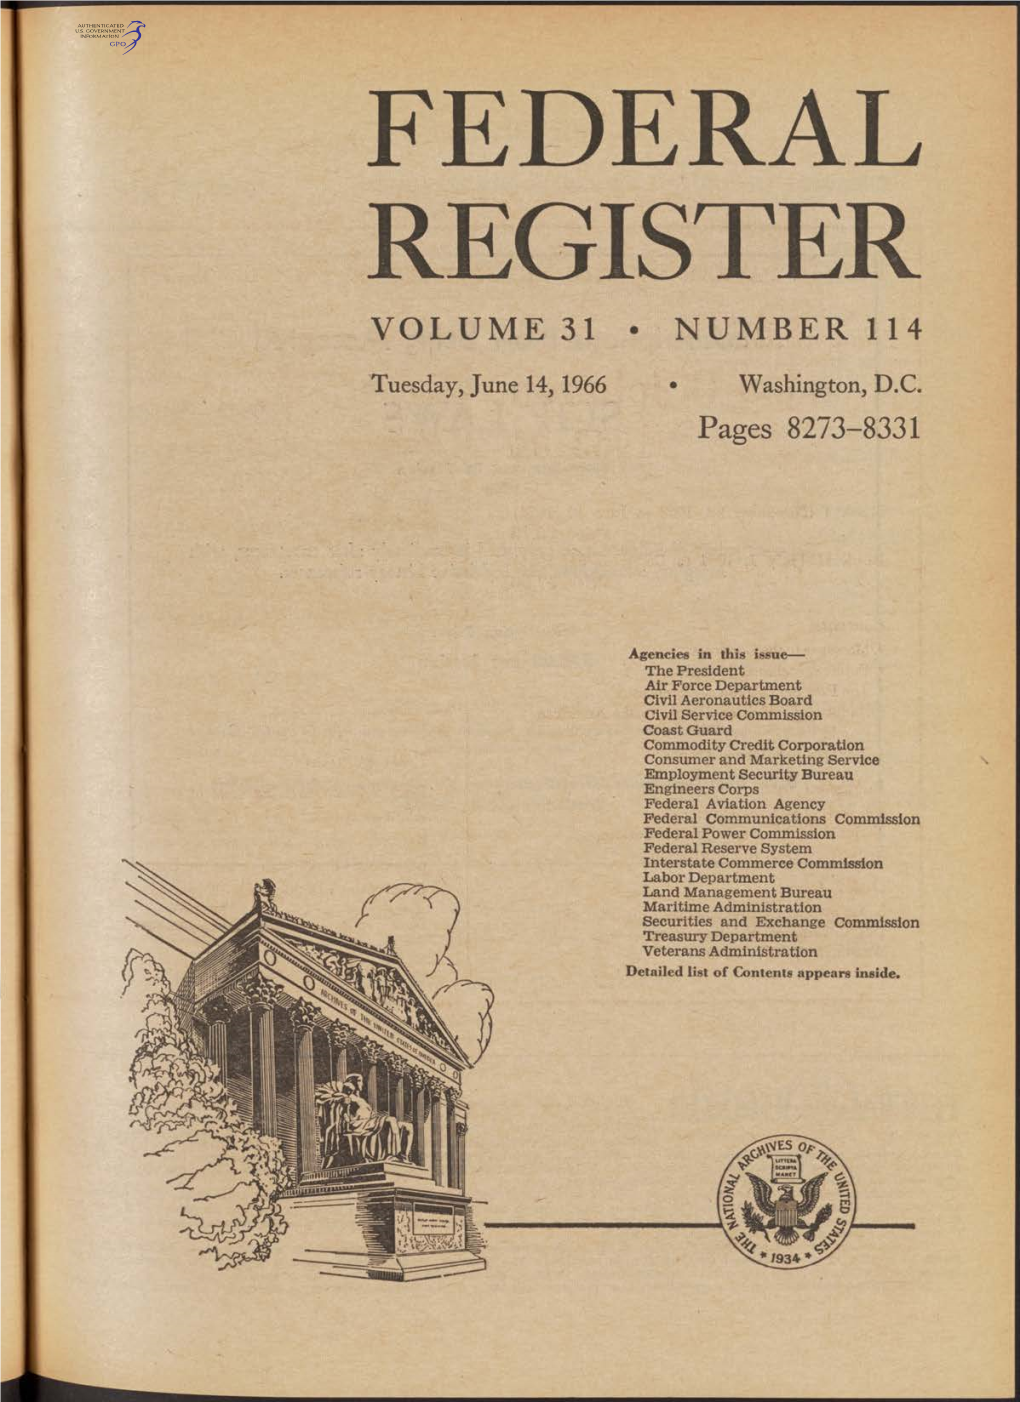 Federal Register Volume 31 • Number 114